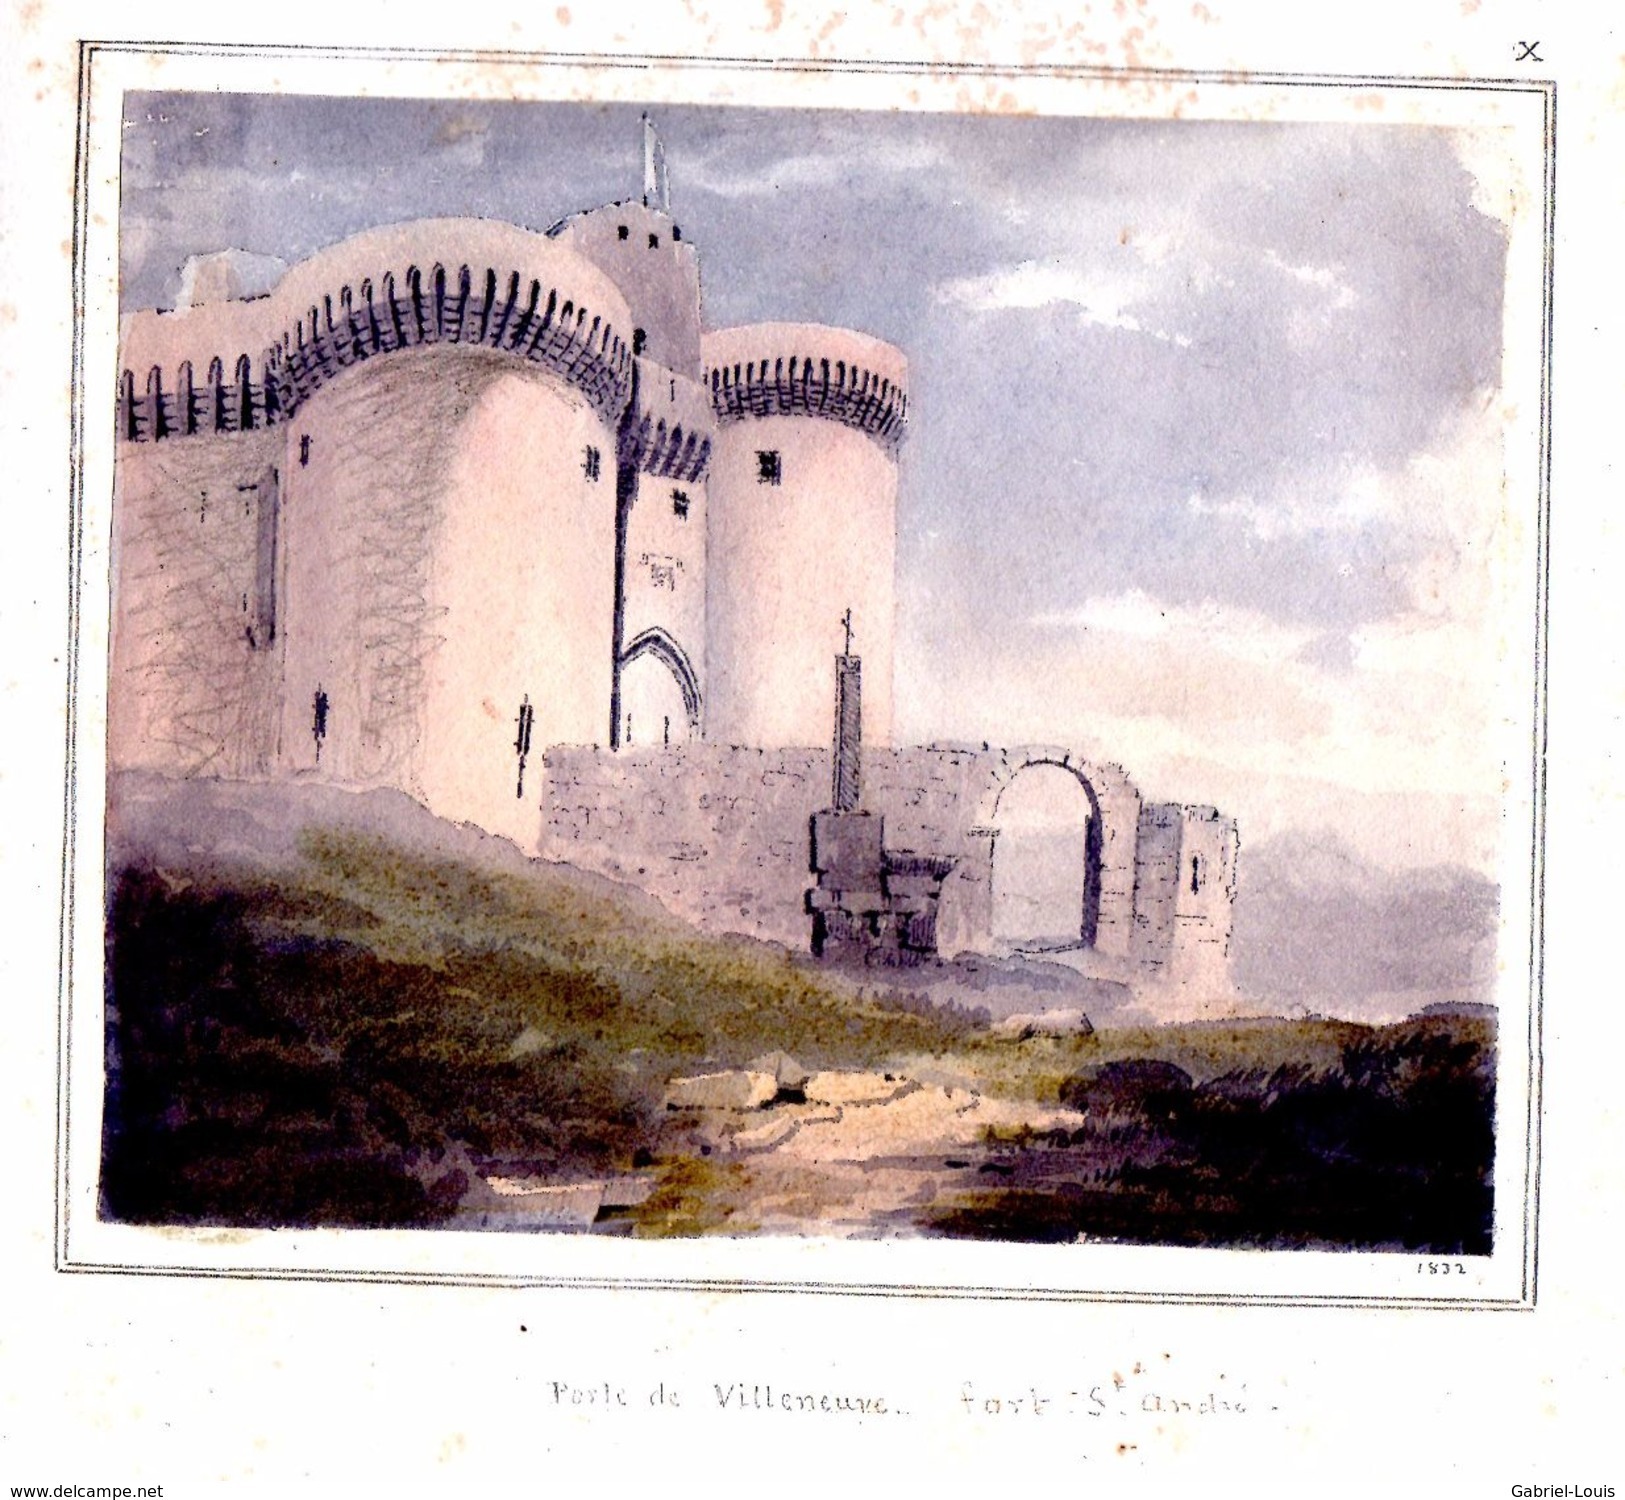 Carnet de croquis 1831 -1835 - Emilien Frossard - Région Avignon et Clermont-Ferrand - 25 dessins et aquarelles Les Baux